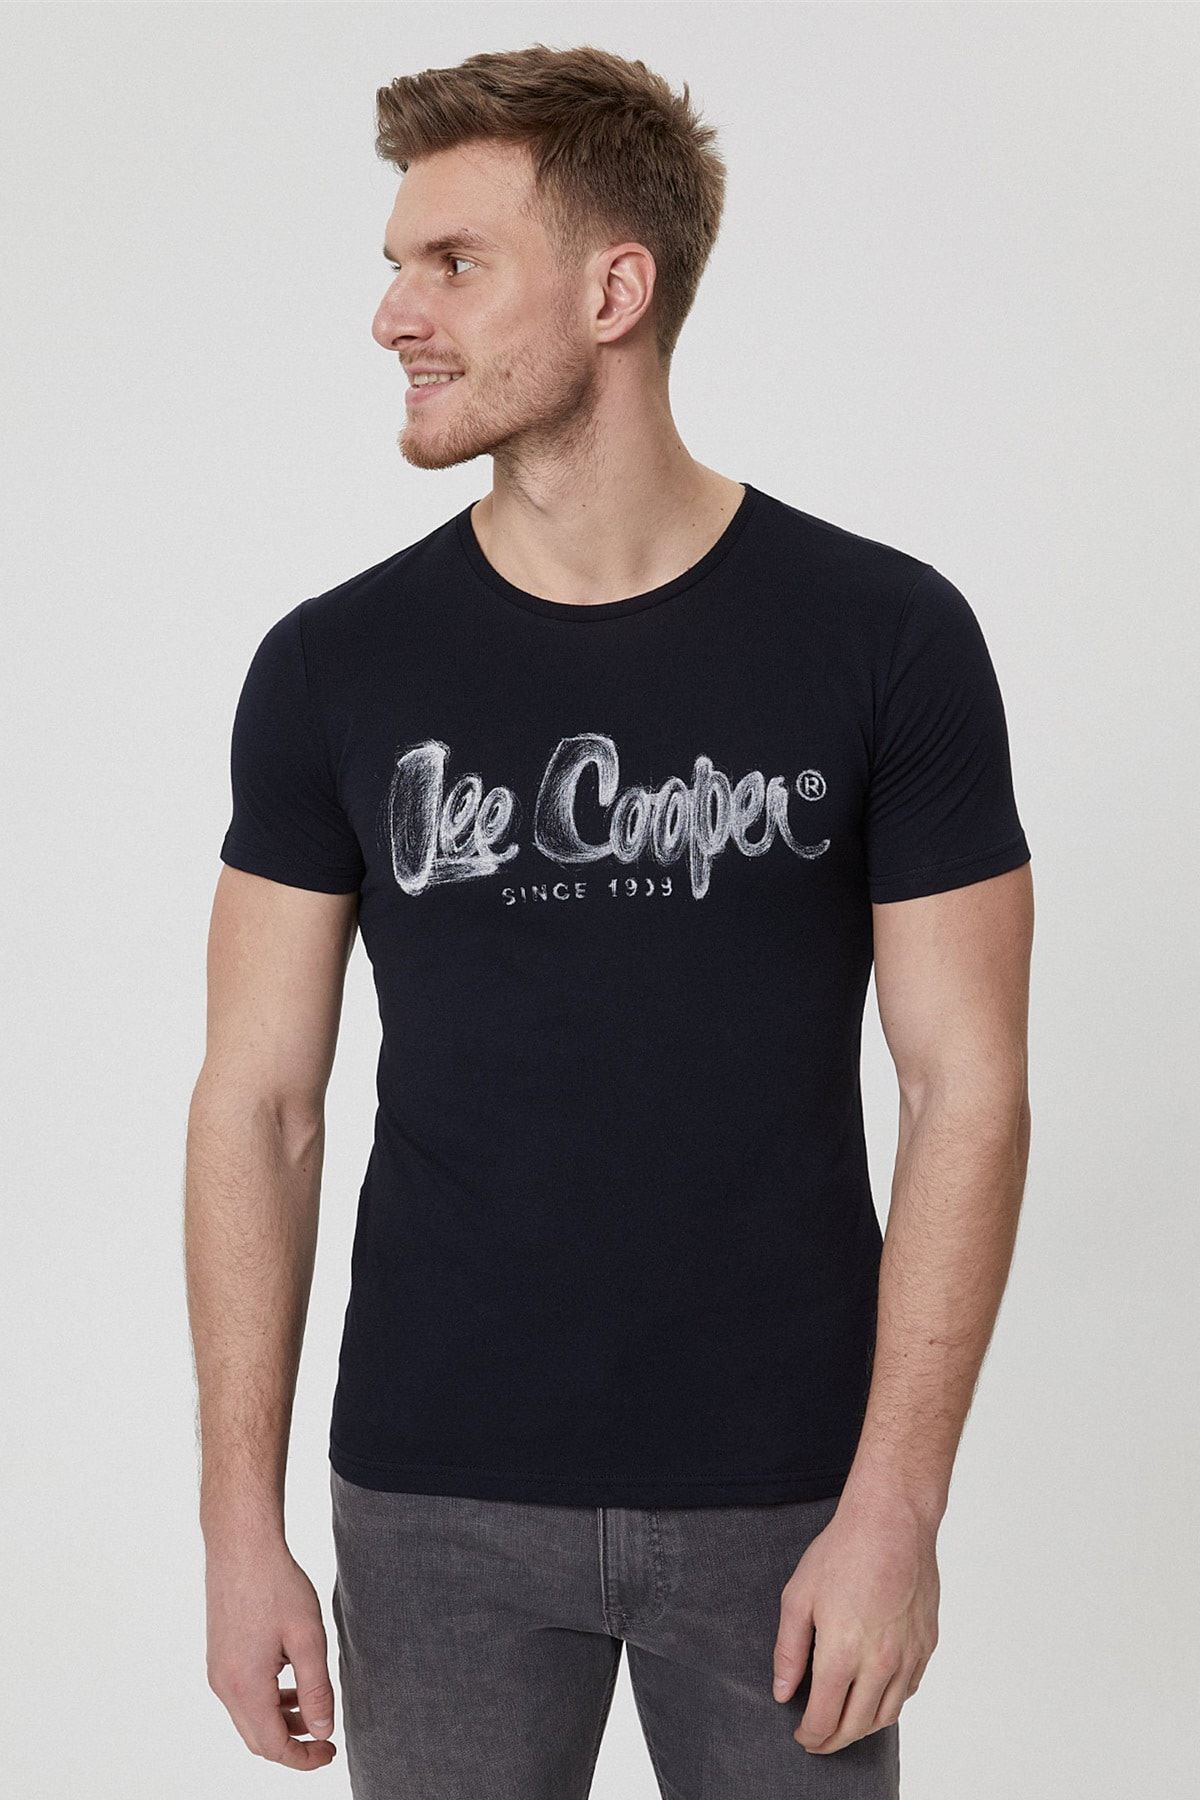 Lee Cooper Erkek Drawinglogo O Yaka T-Shirt Siyah 212 LCM 242040